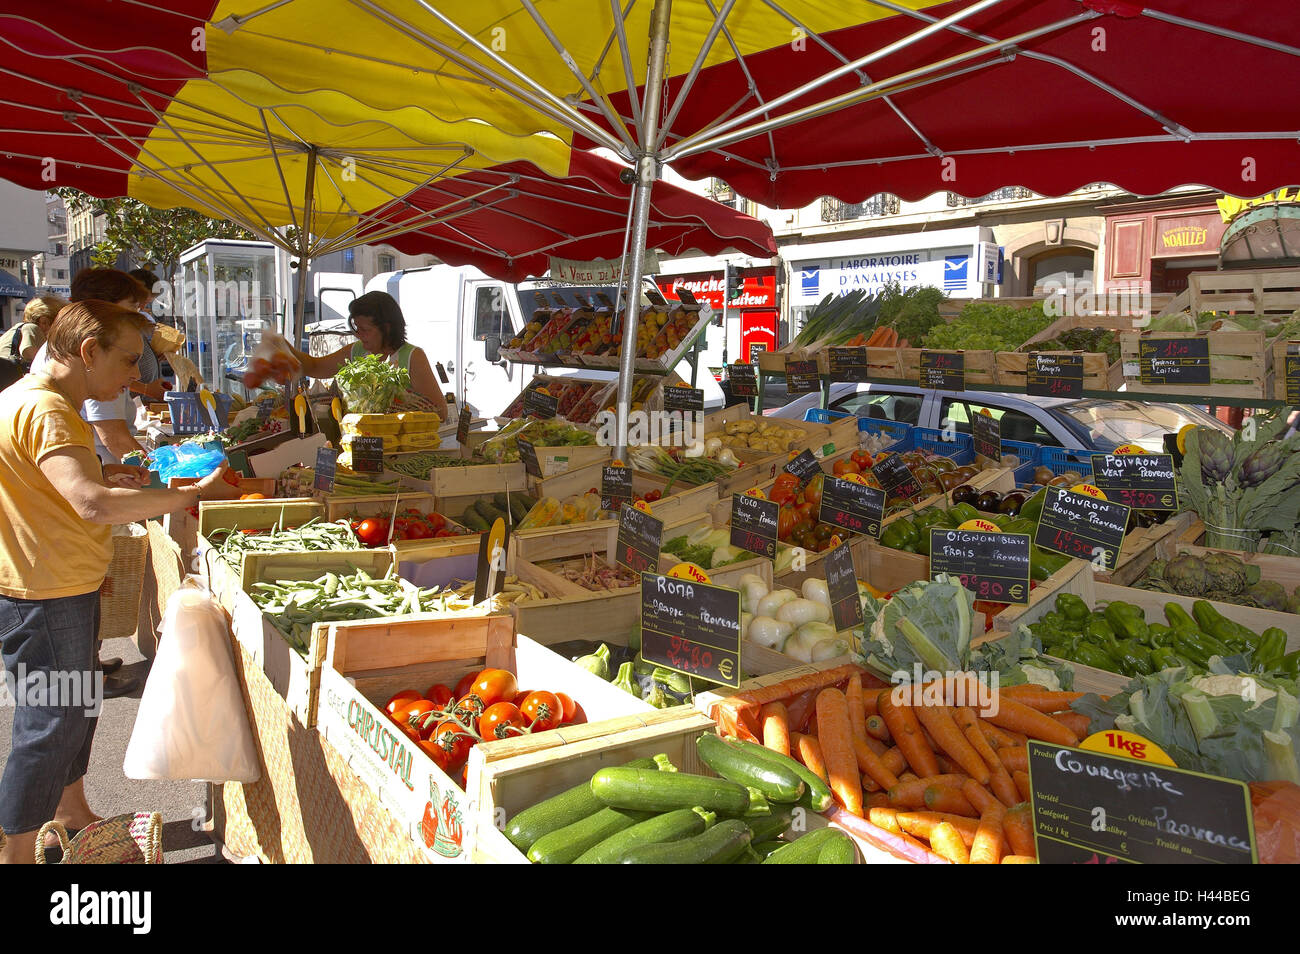 France, Provence, Marseille, Vieille Ville, market stall, touristiques, de fruits, de légumes, le modèle ne libération, Banque D'Images